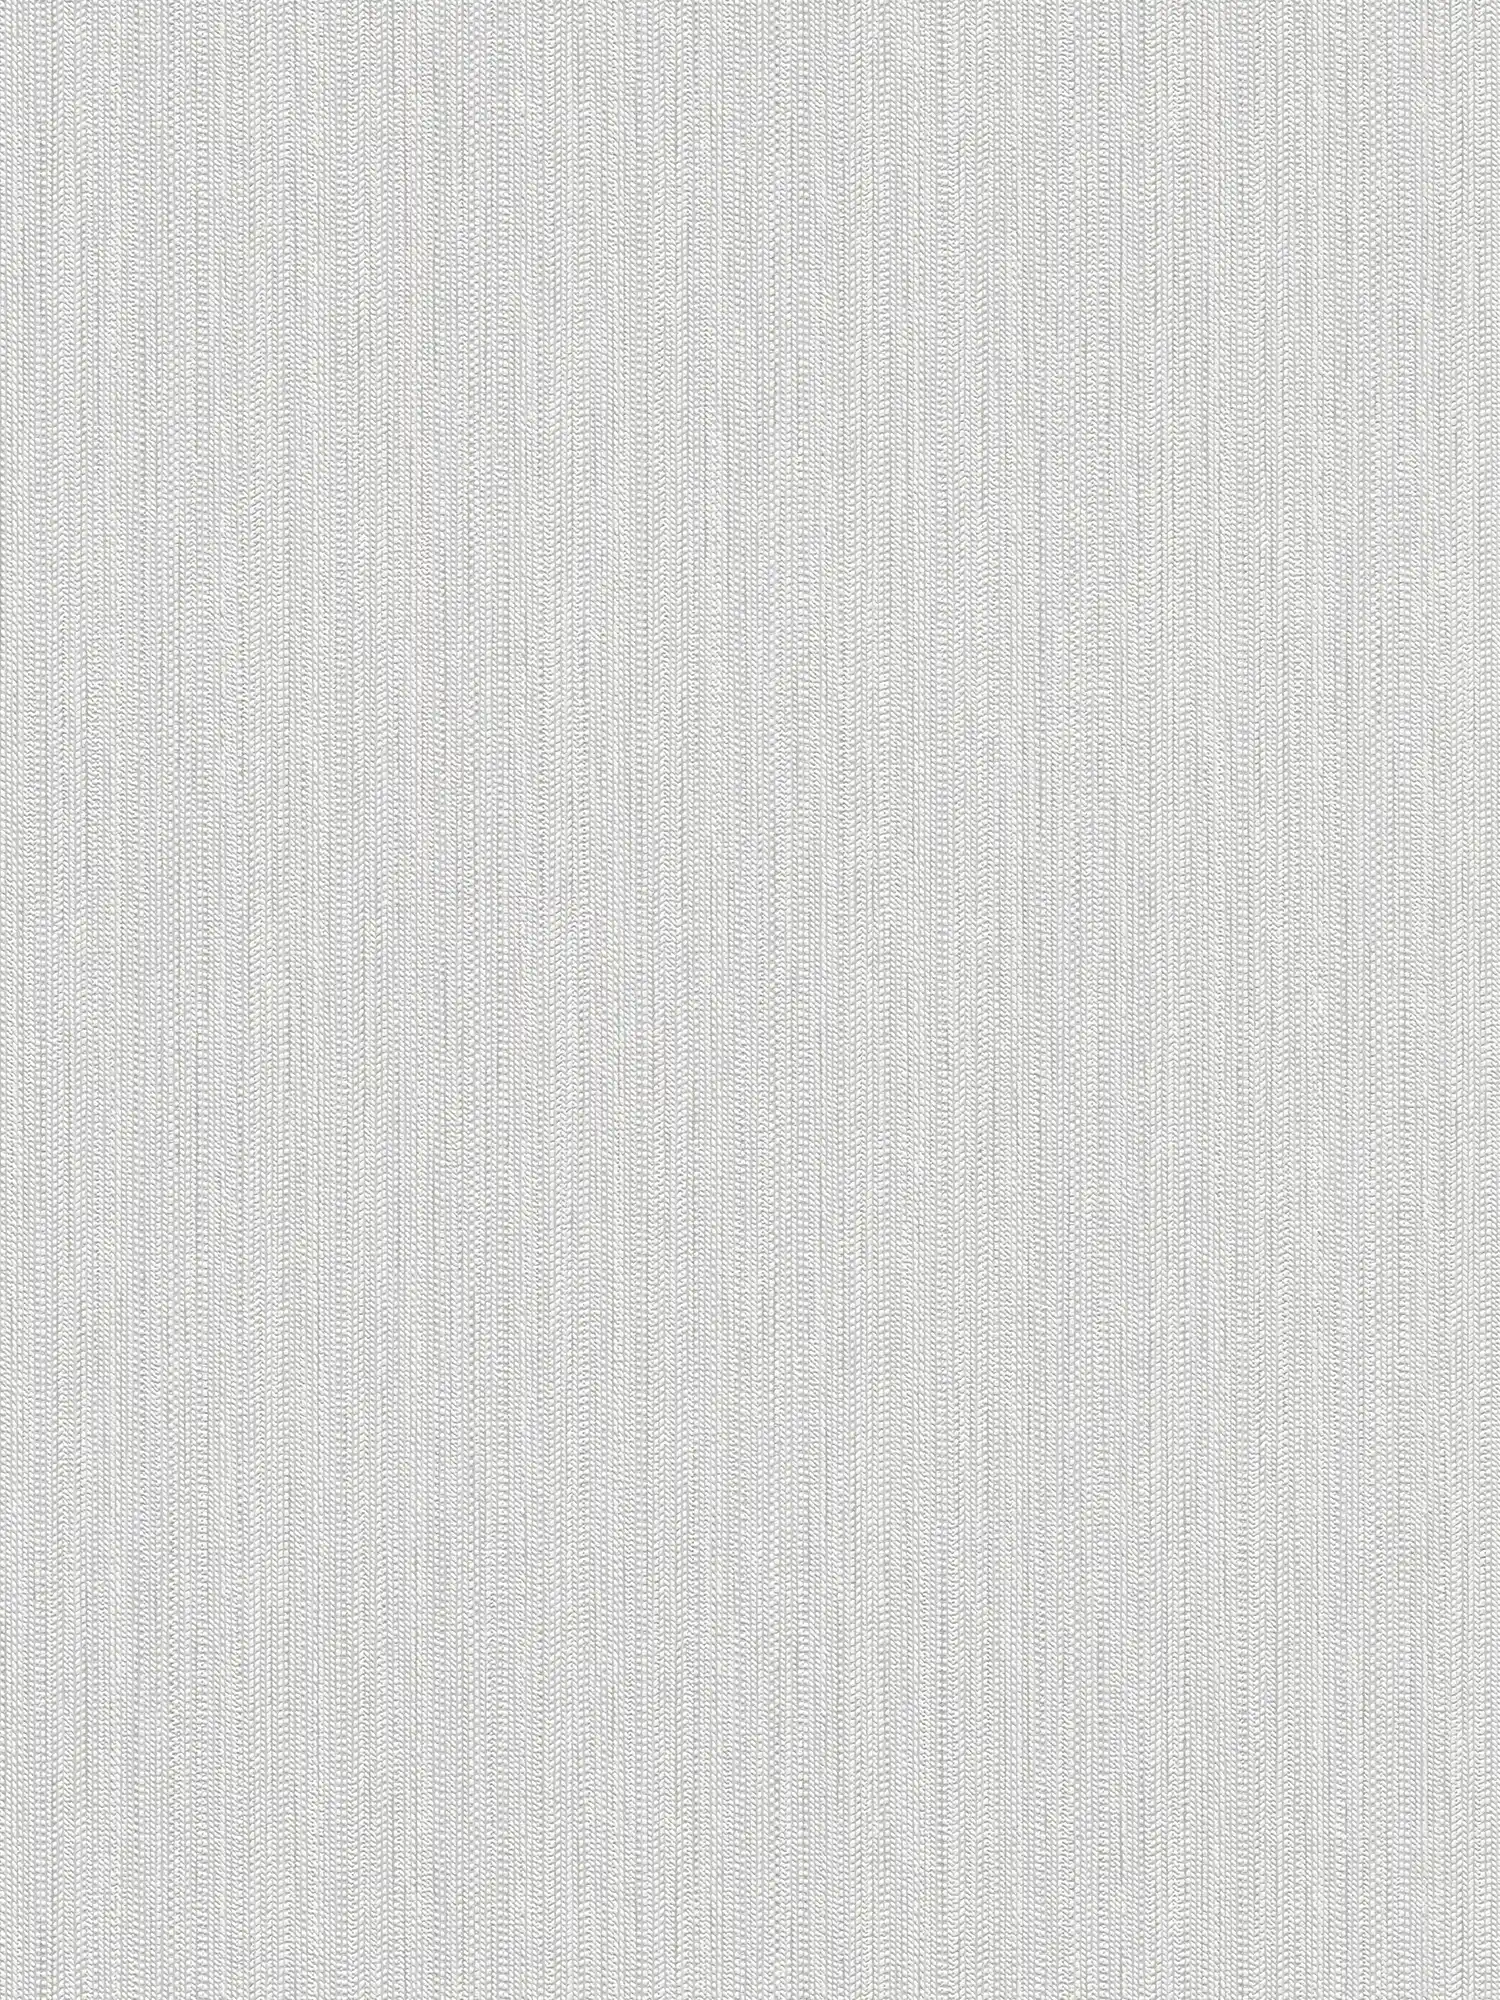 Papel pintado no tejido con estructura de tejido trenzado - blanco, gris claro
